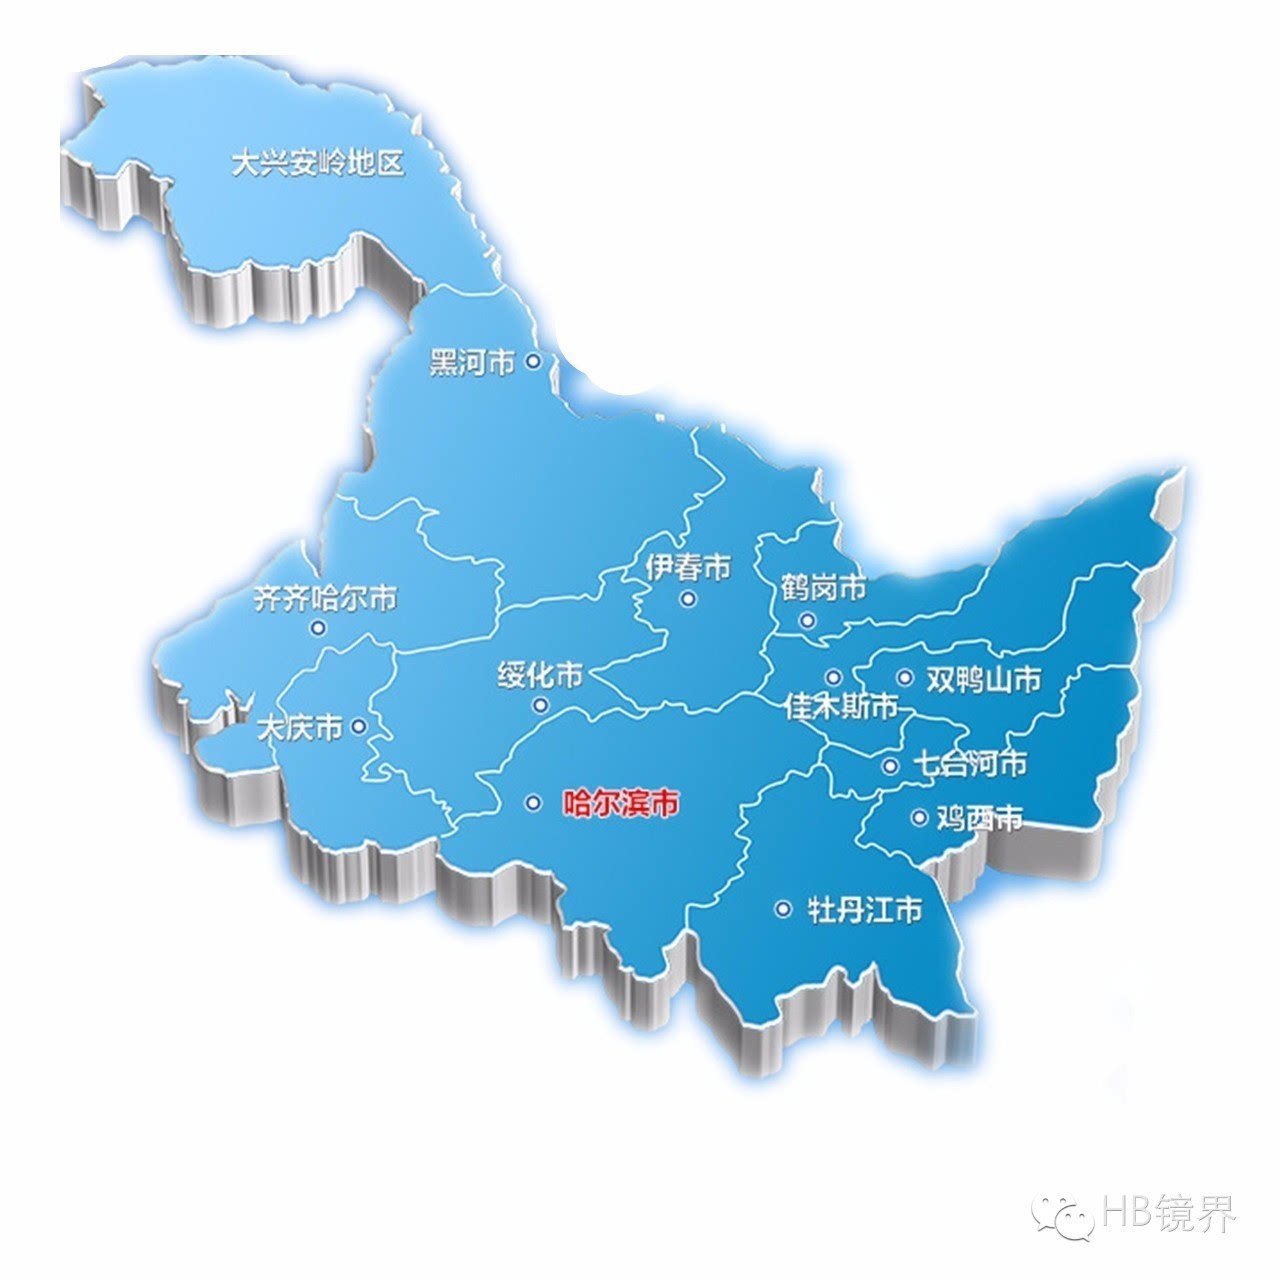 黑龙江省“最美城市”评选,赶紧为自己家乡投一票!